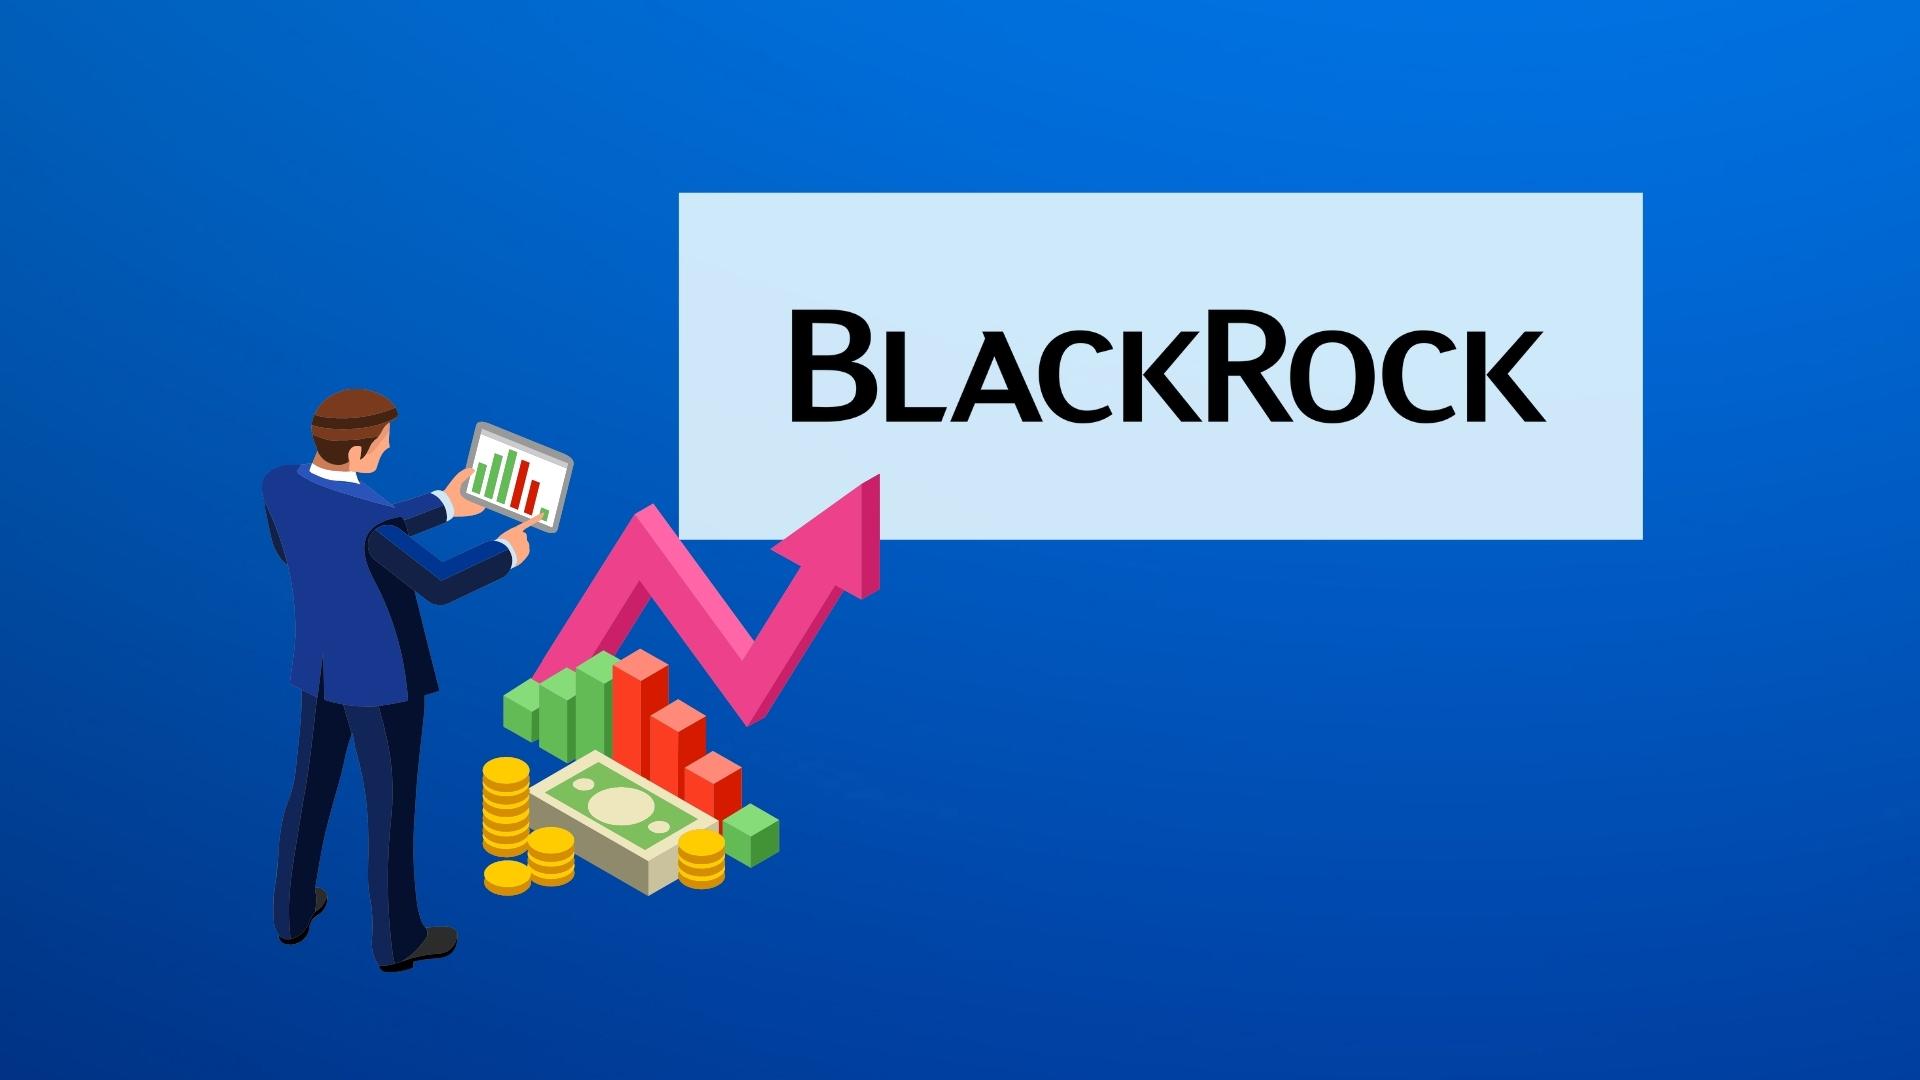 BlackRock предложит клиентам сервис для торговли криптовалютами.